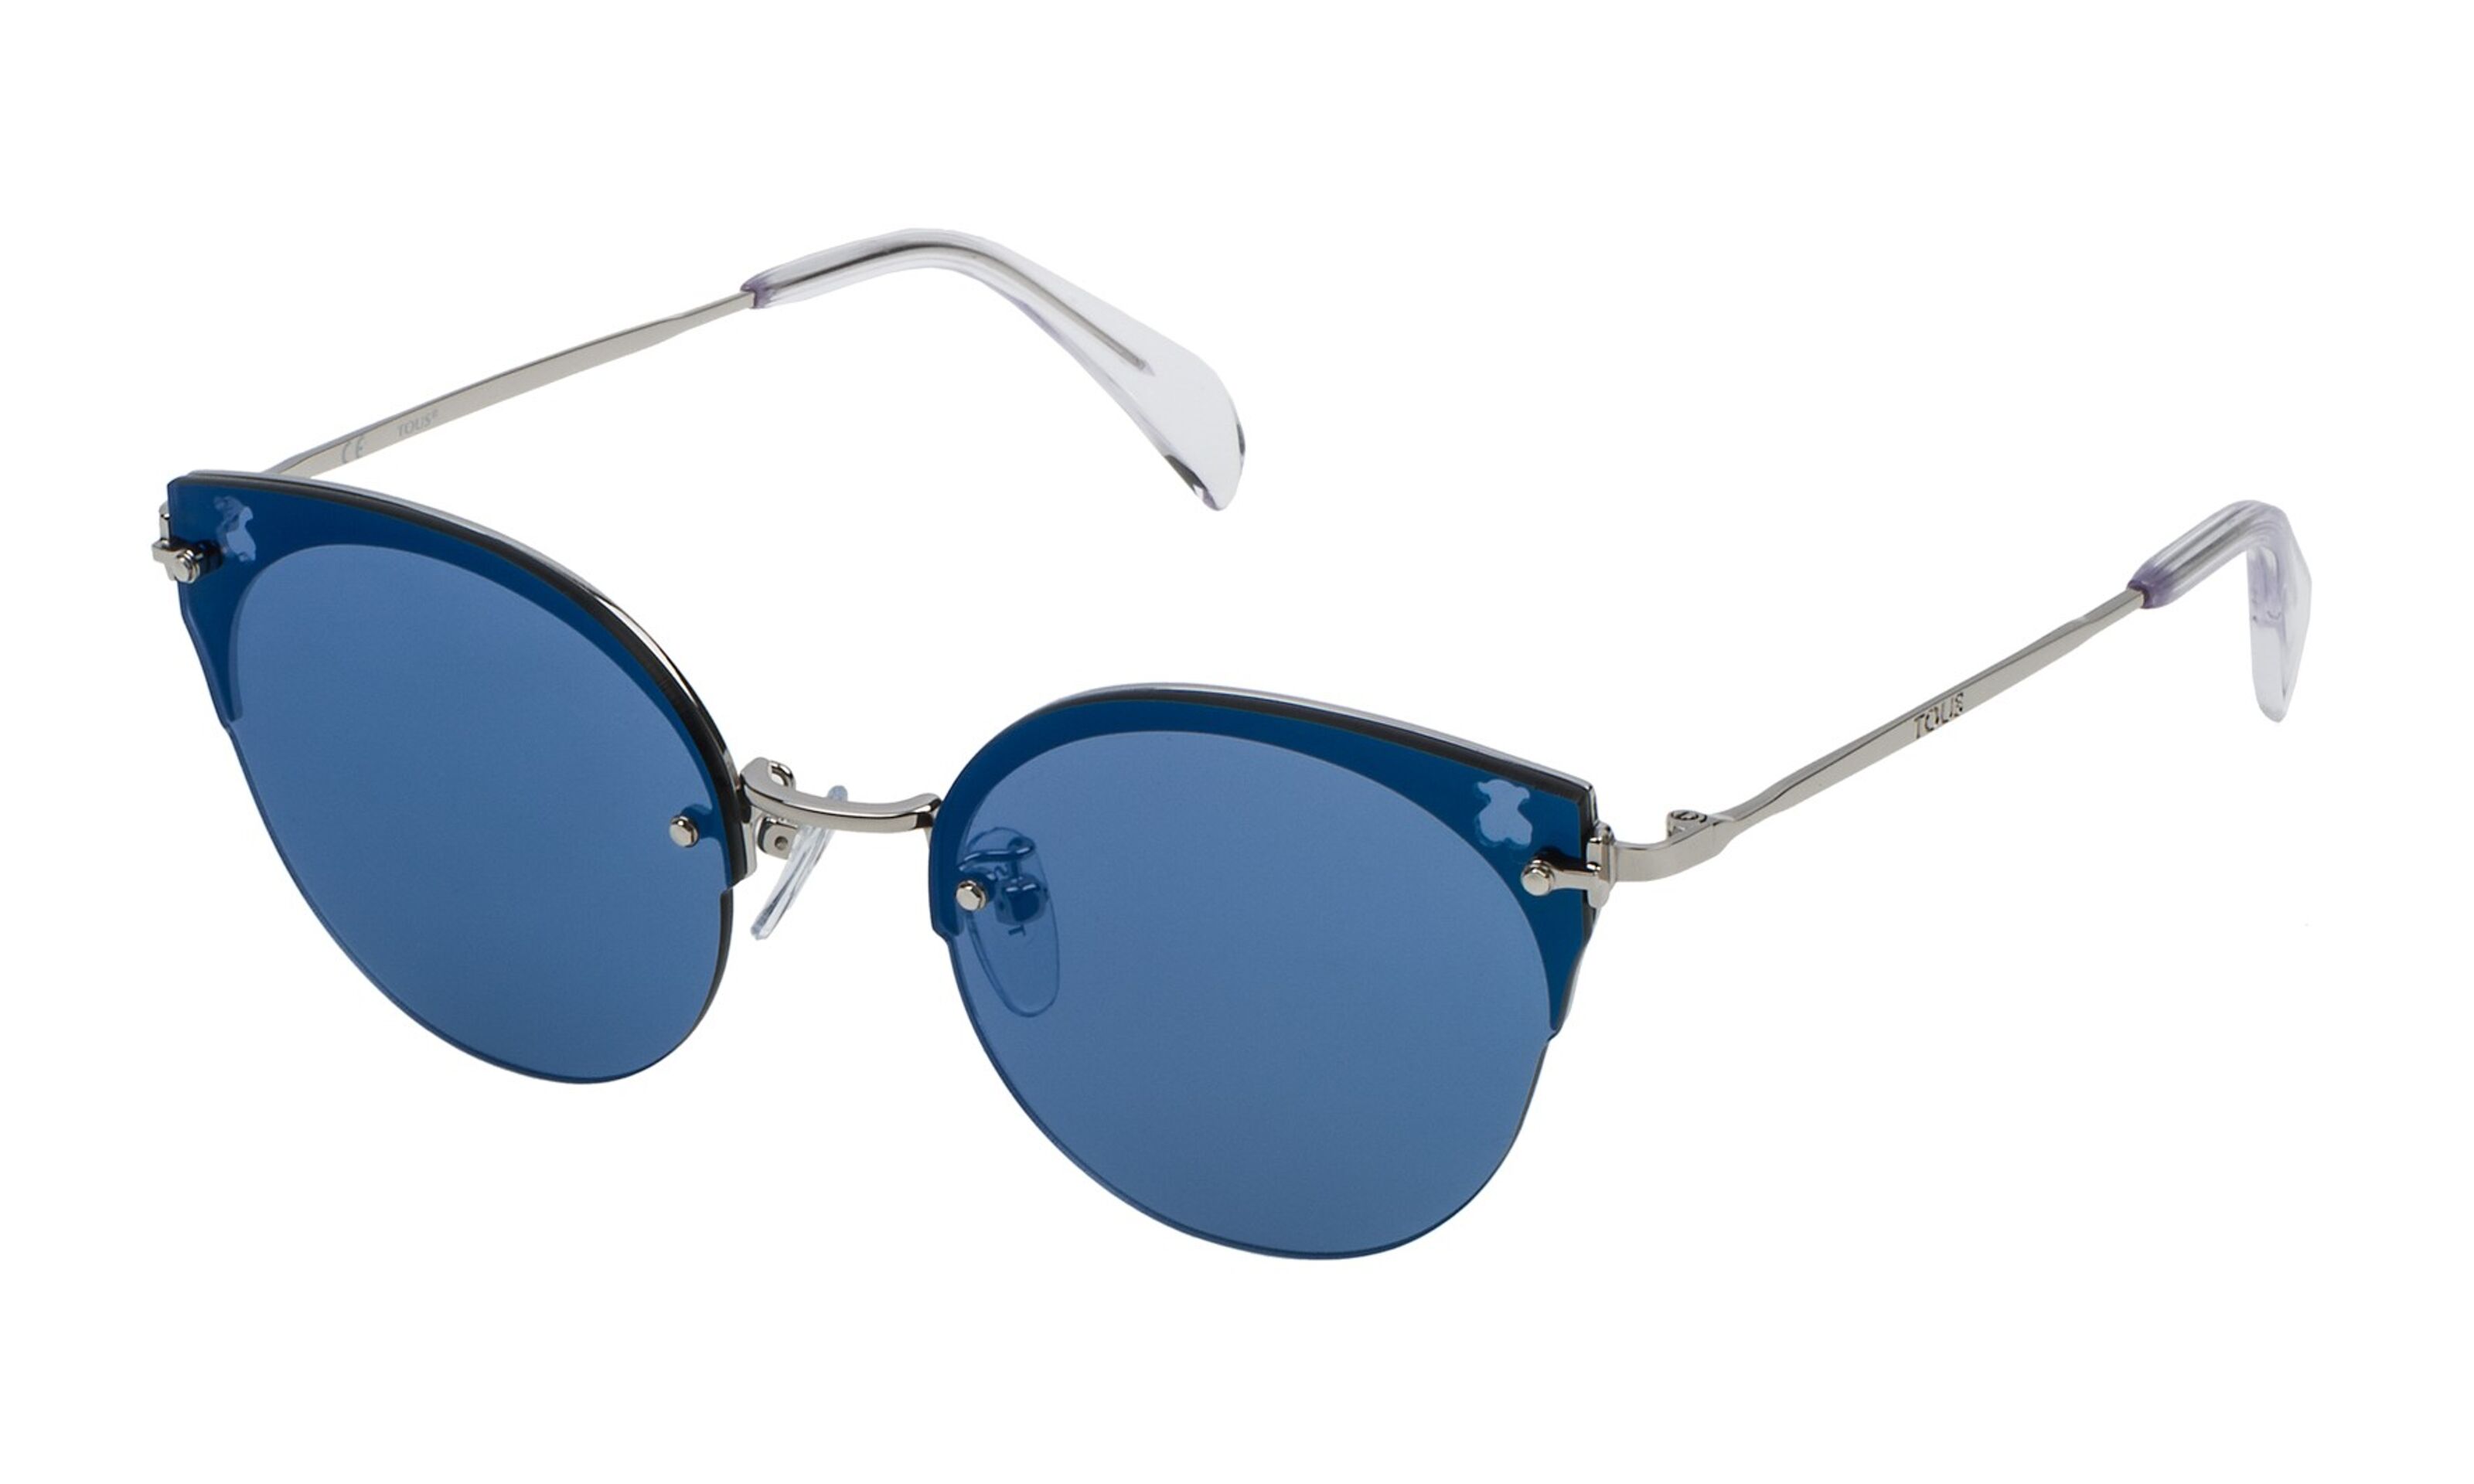 Louis Vuitton Women's Sunglasses  Gafas de sol, Gafas, Bolsos louis vuitton